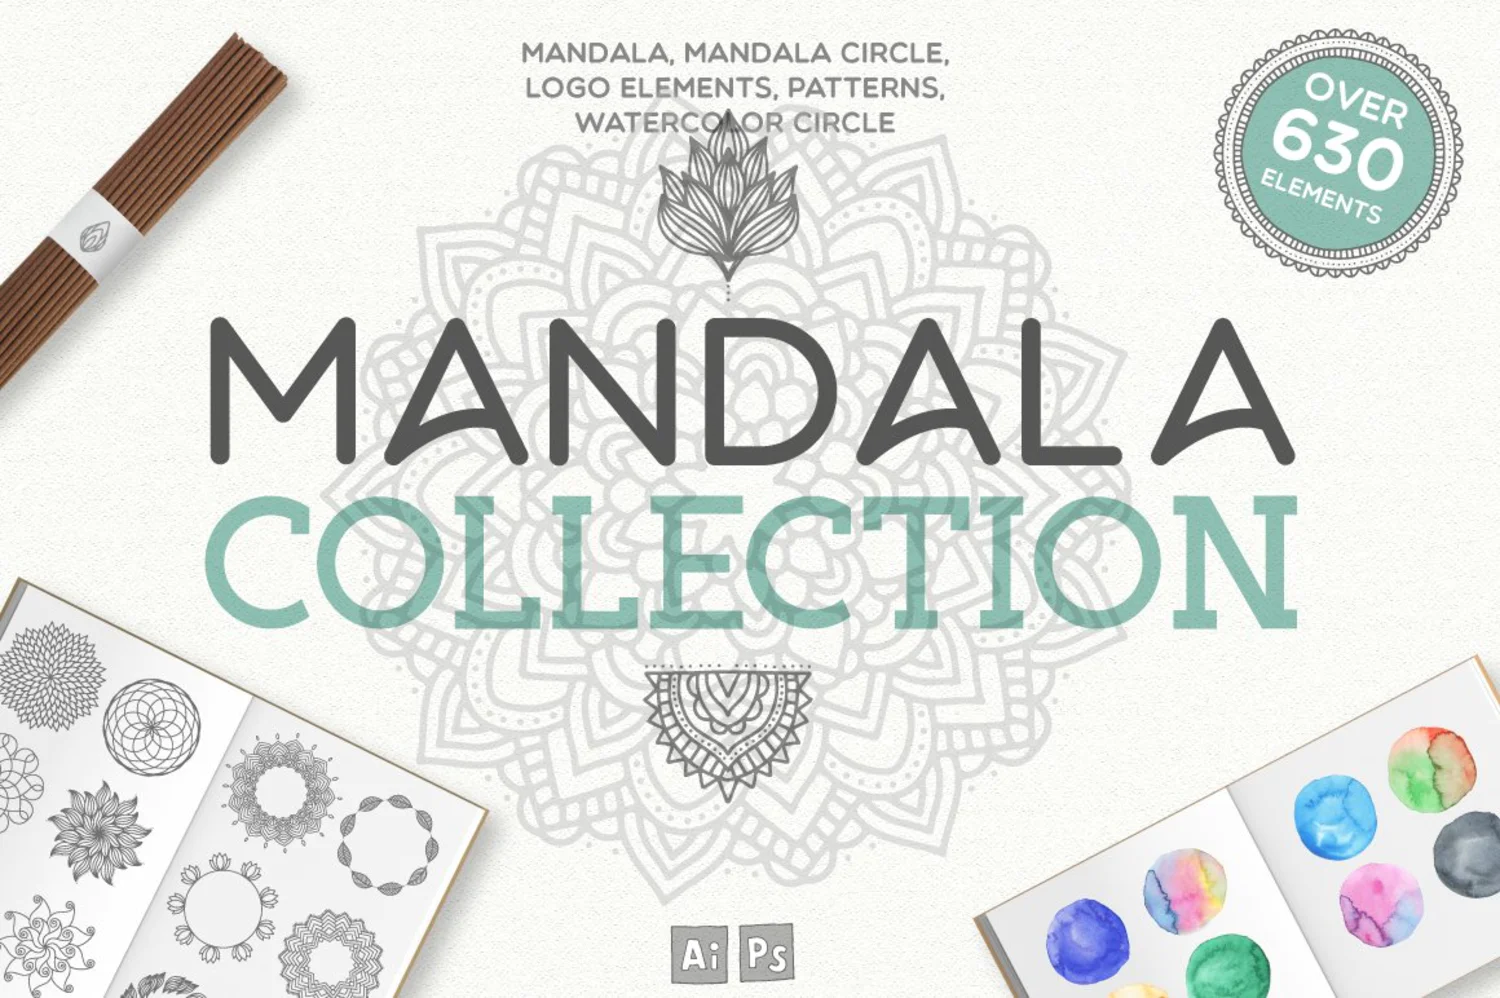 5446 神圣几何形状的Mandala曼陀罗图案矢量纹理插画素材